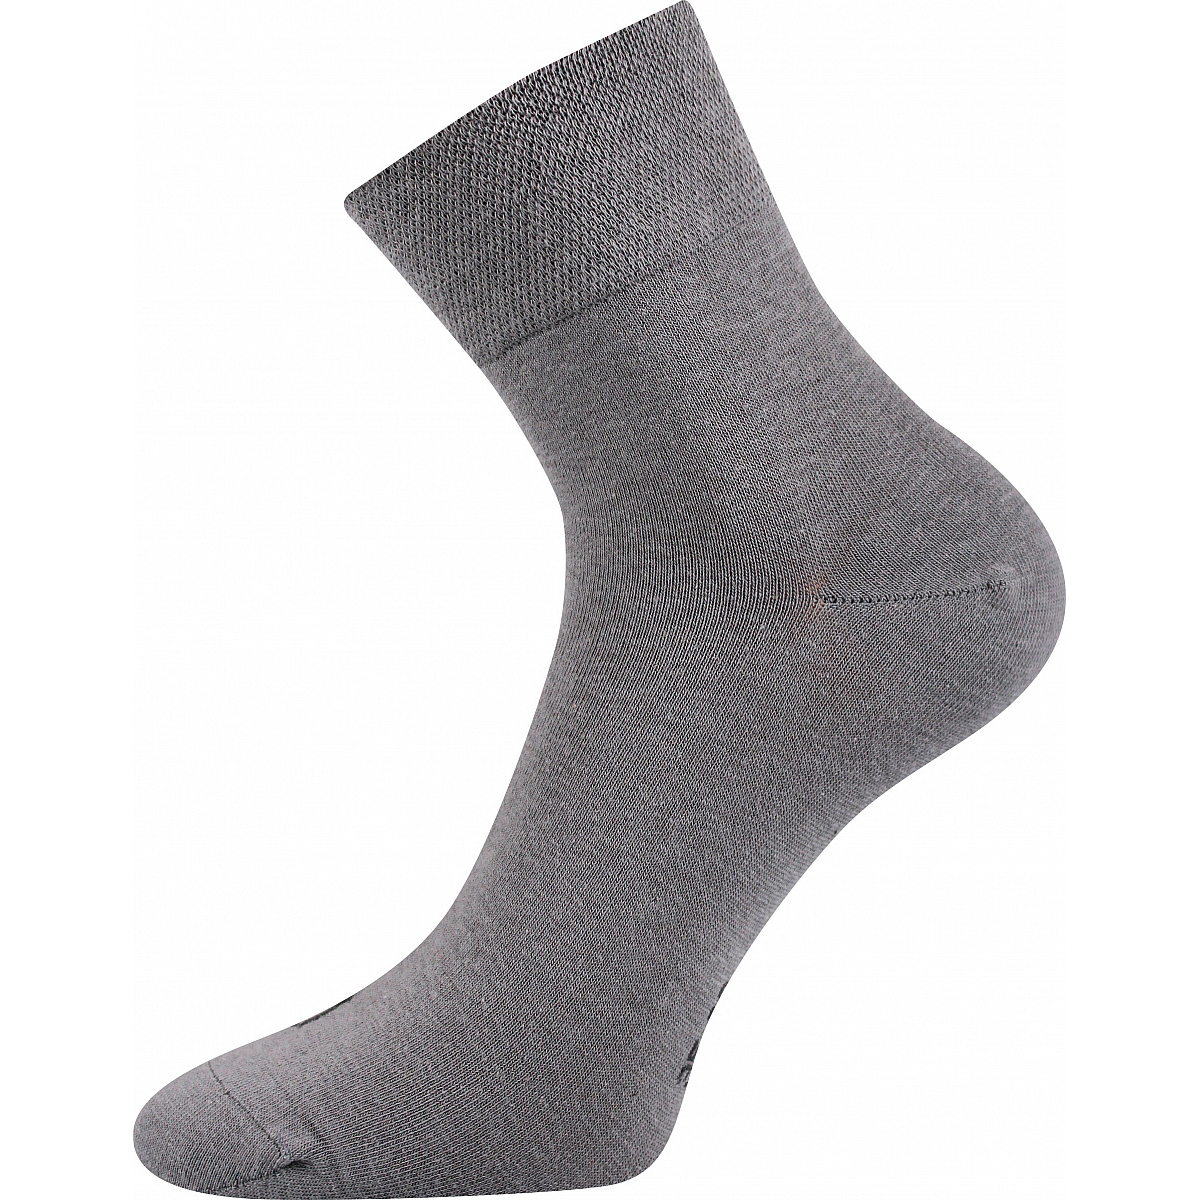 Ponožky unisex klasické Lonka Emi - světle šedé, 35-38